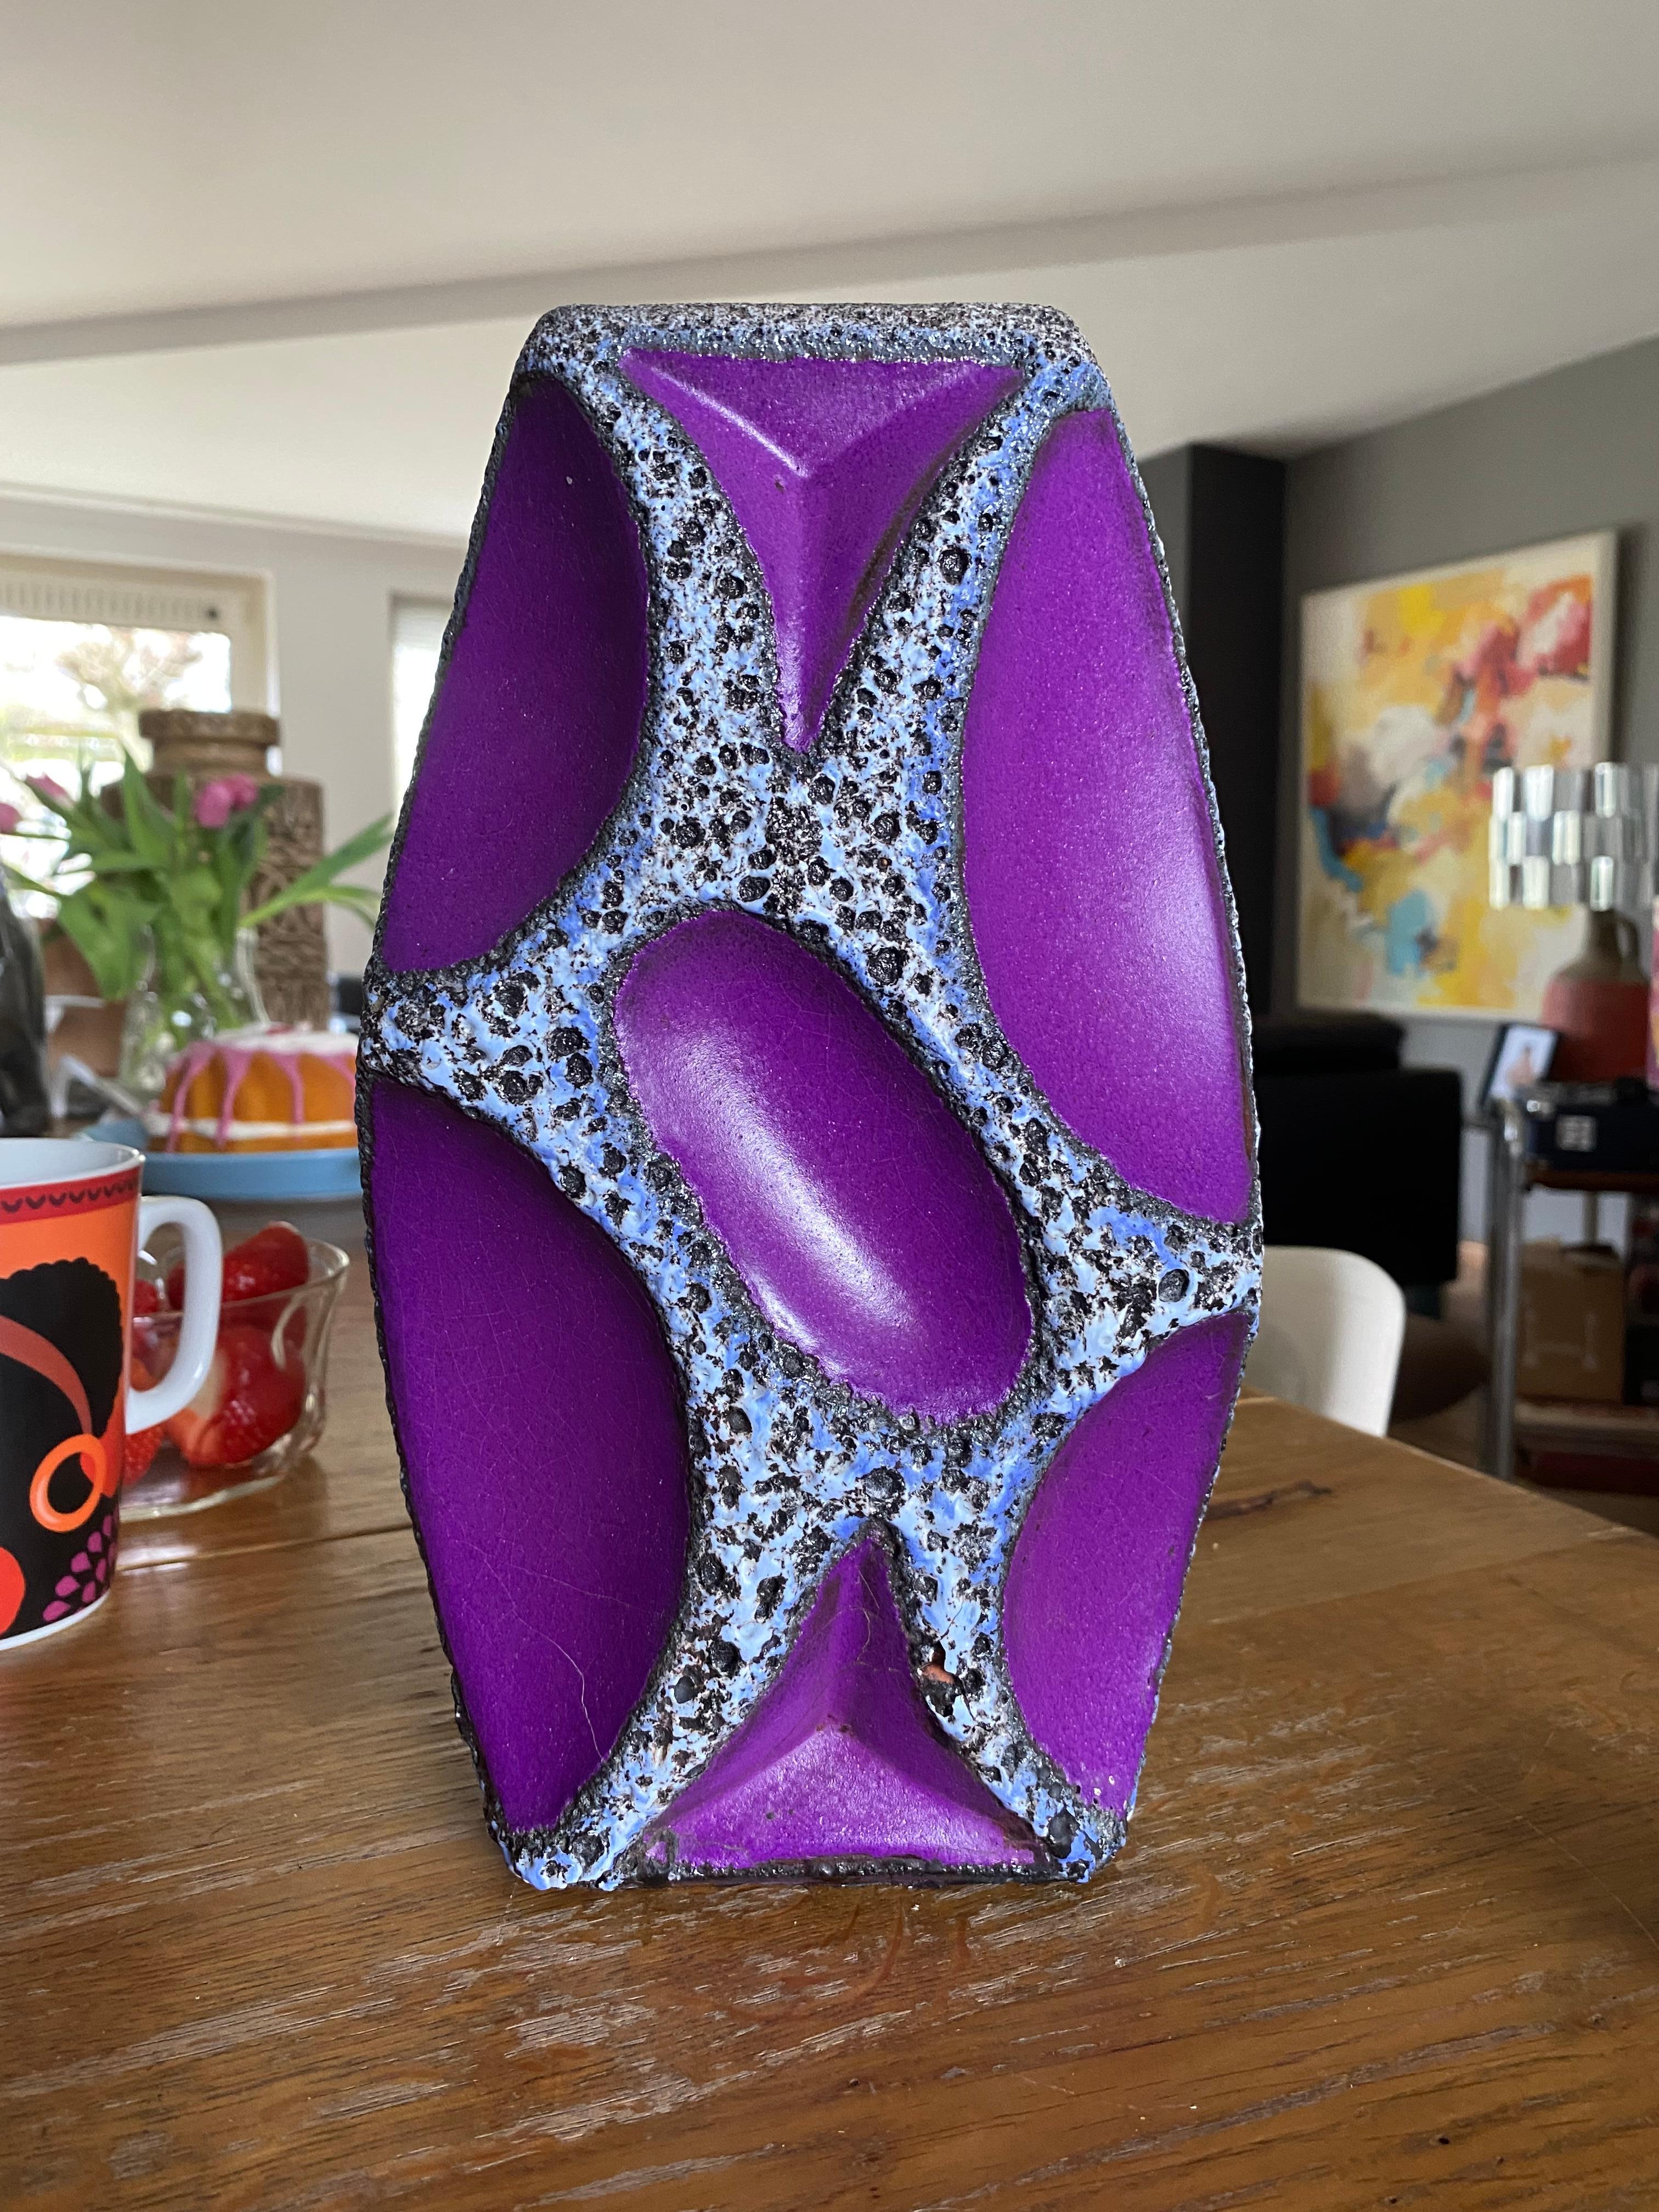 Roth Keramik Vase, mit blau umrandeter weißer und schwarzer Lava und violetter Glasur. Diese Vasen sind sehr begehrt, vor allem in den Farben Gelb oder Violett.

